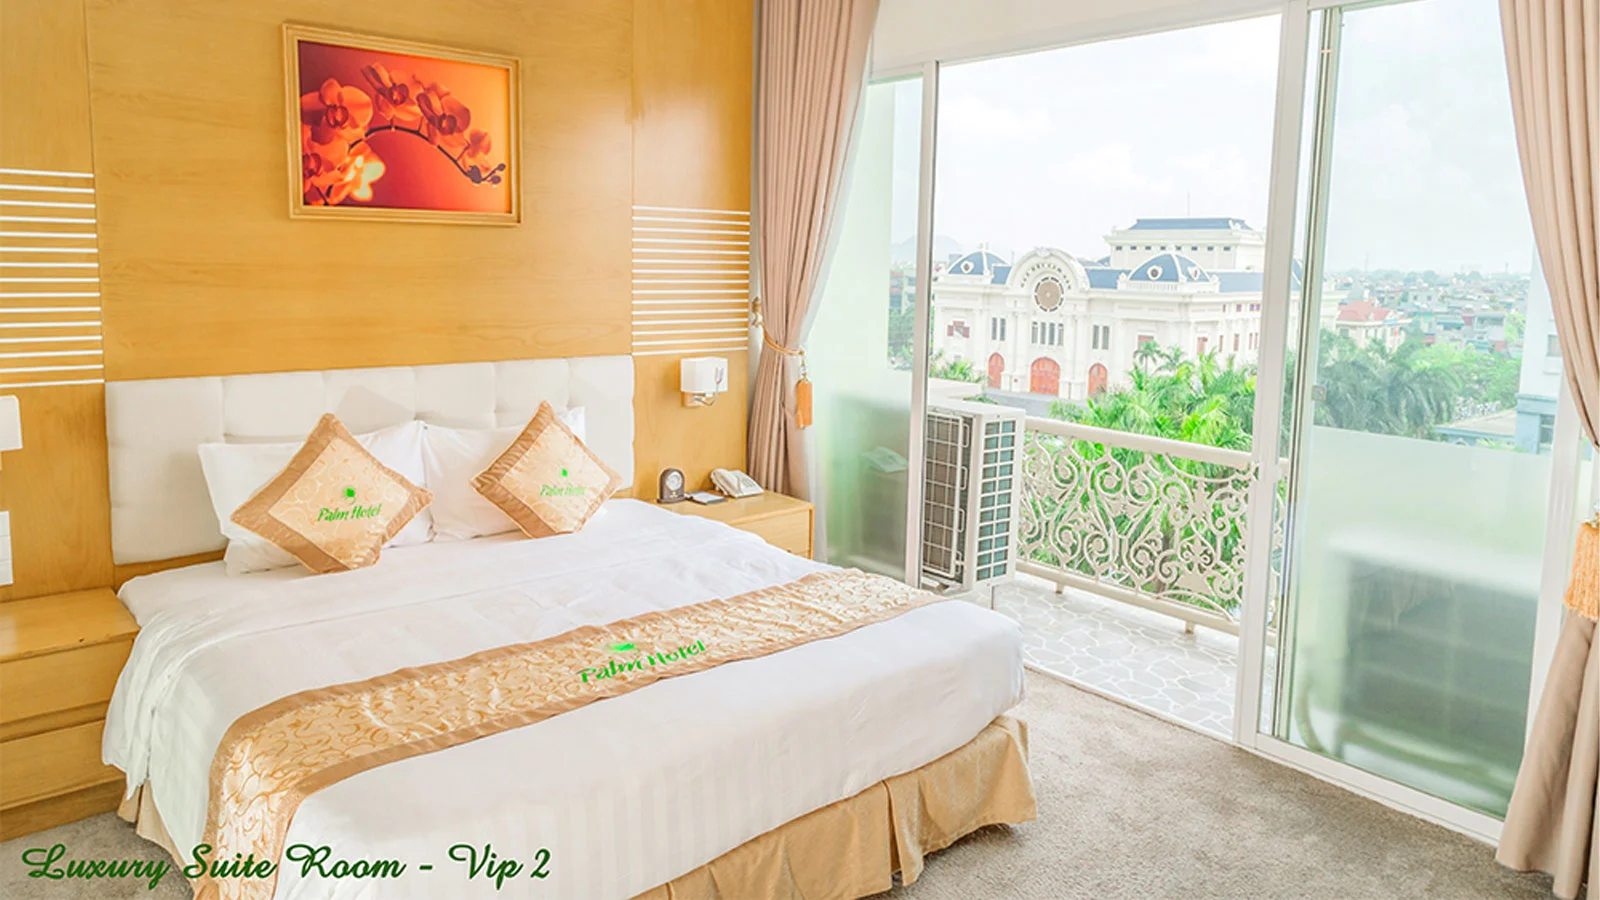 Khách sạn Palm Thanh Hóa Hotel